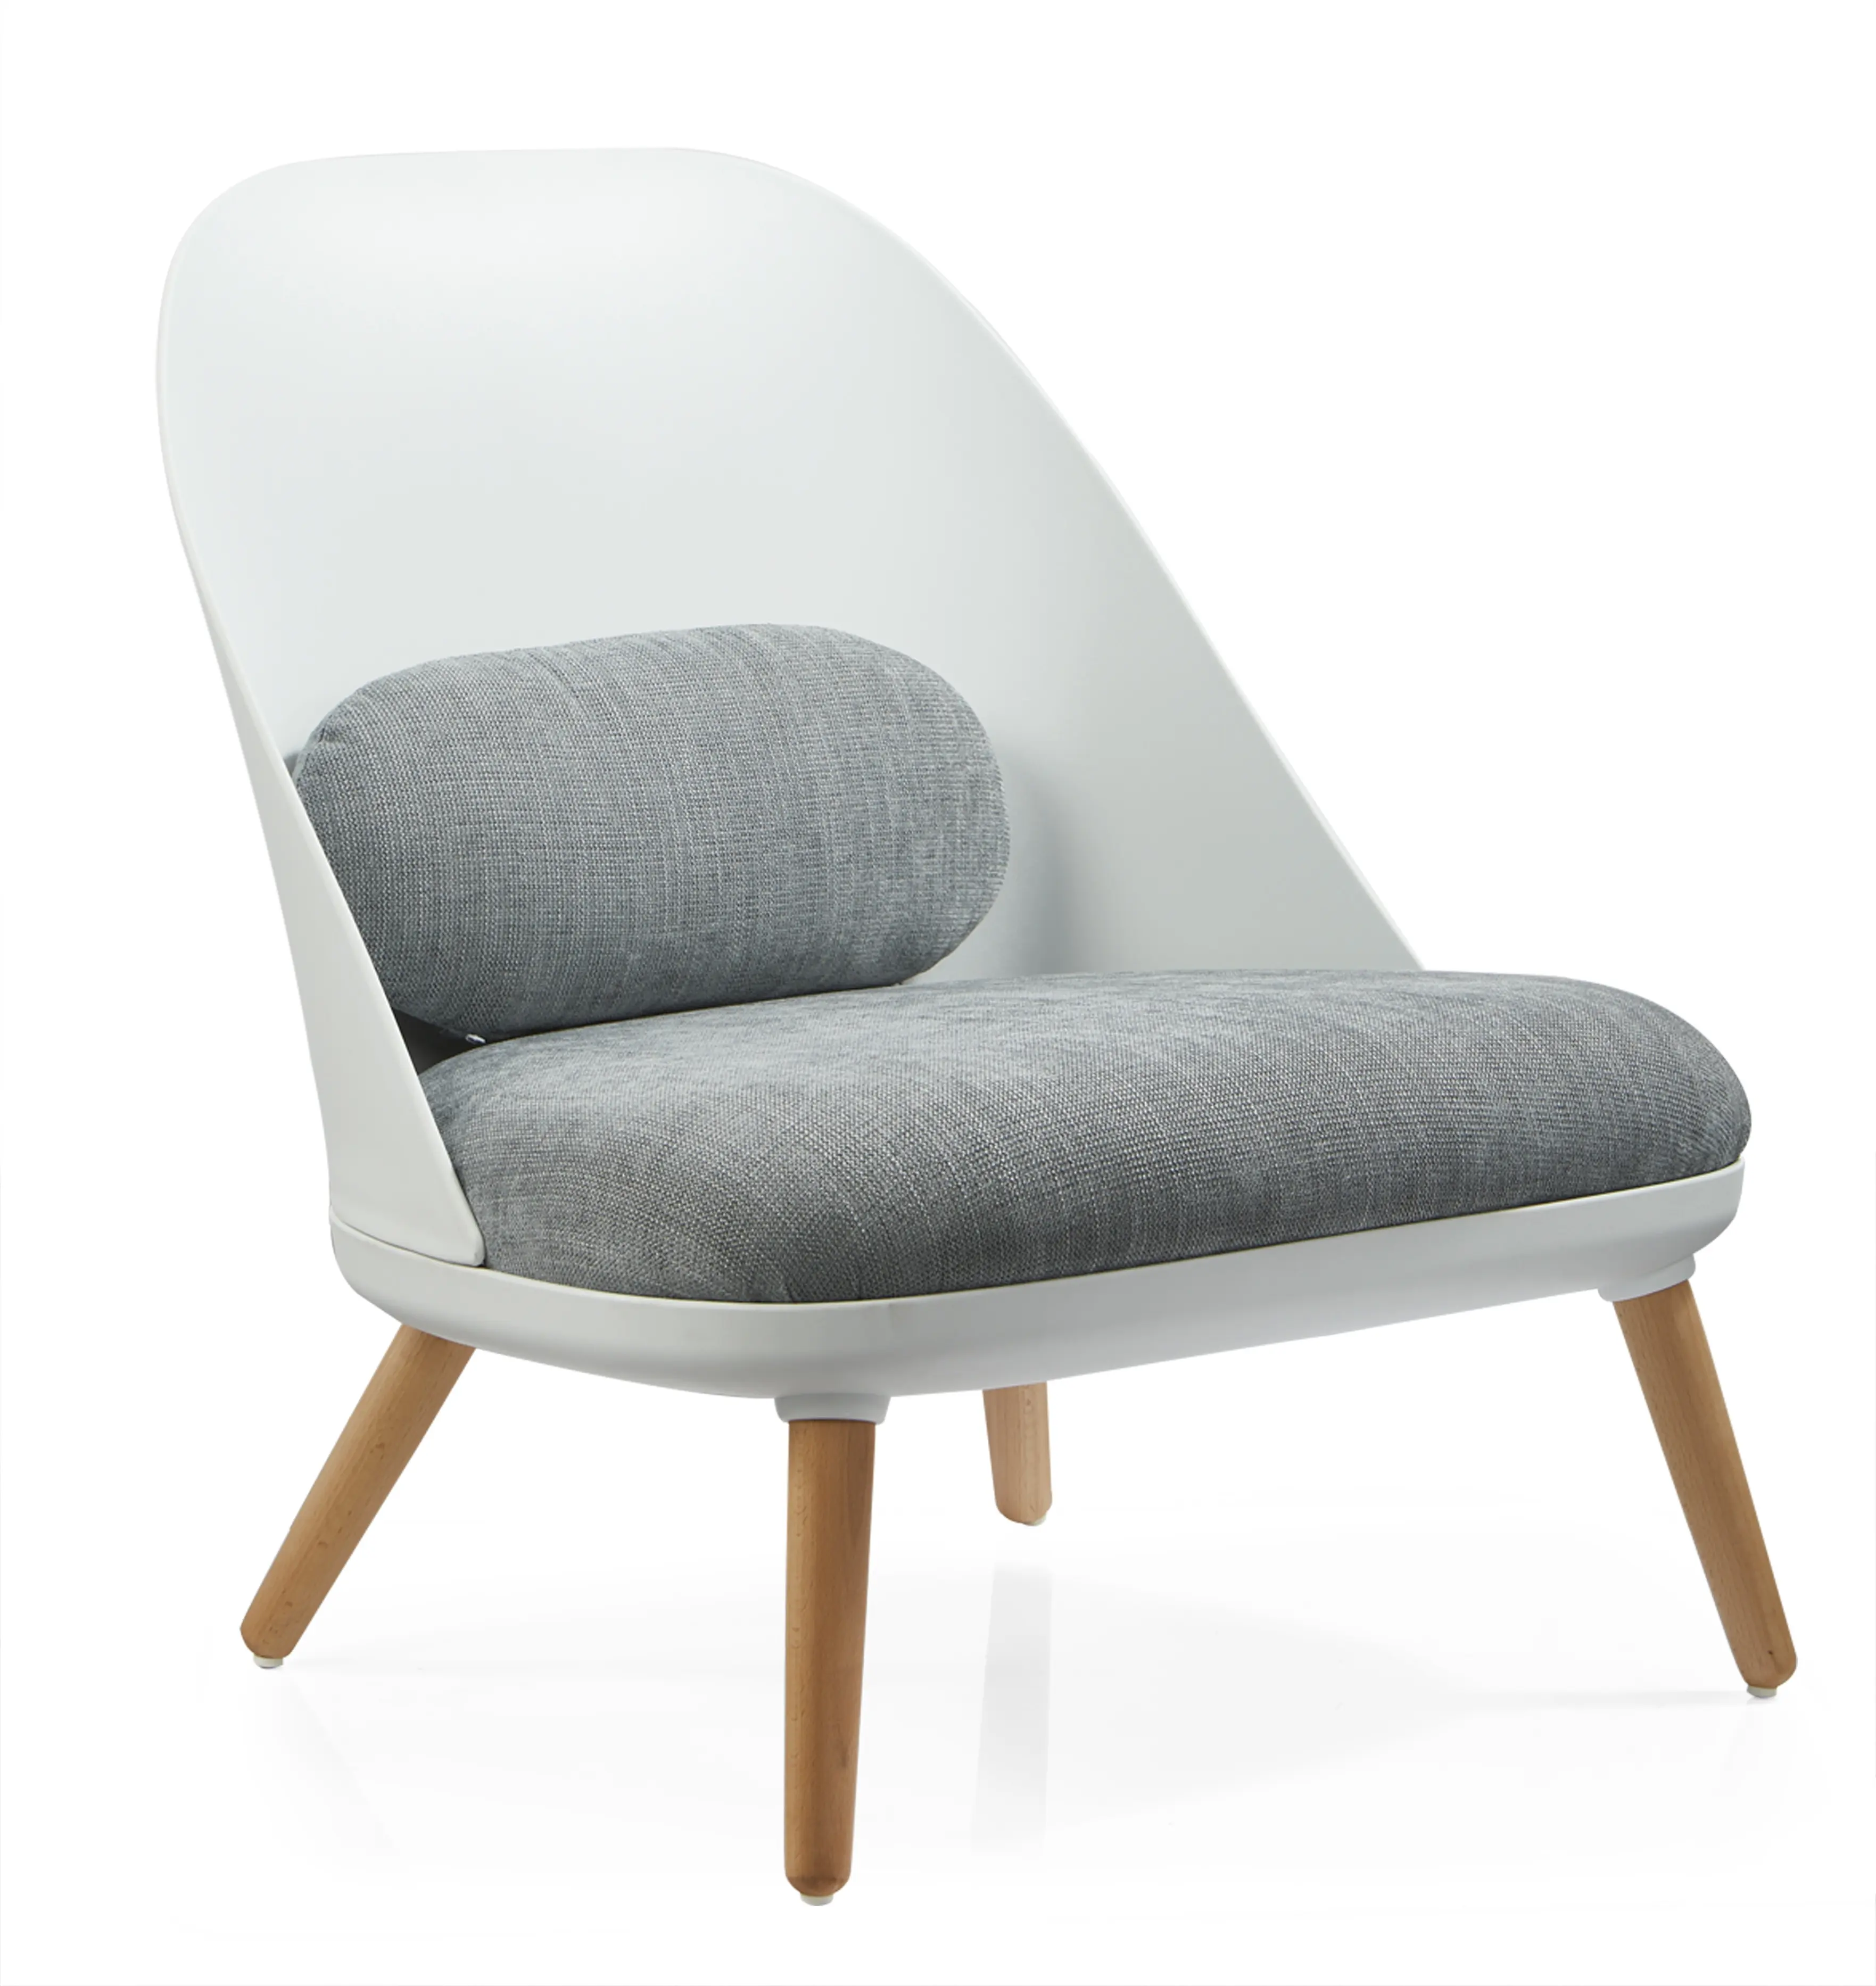 Danimarca Design per il tempo libero sedia per la casa mobili Chaise longue grigia con pouf sedia in tessuto Pp